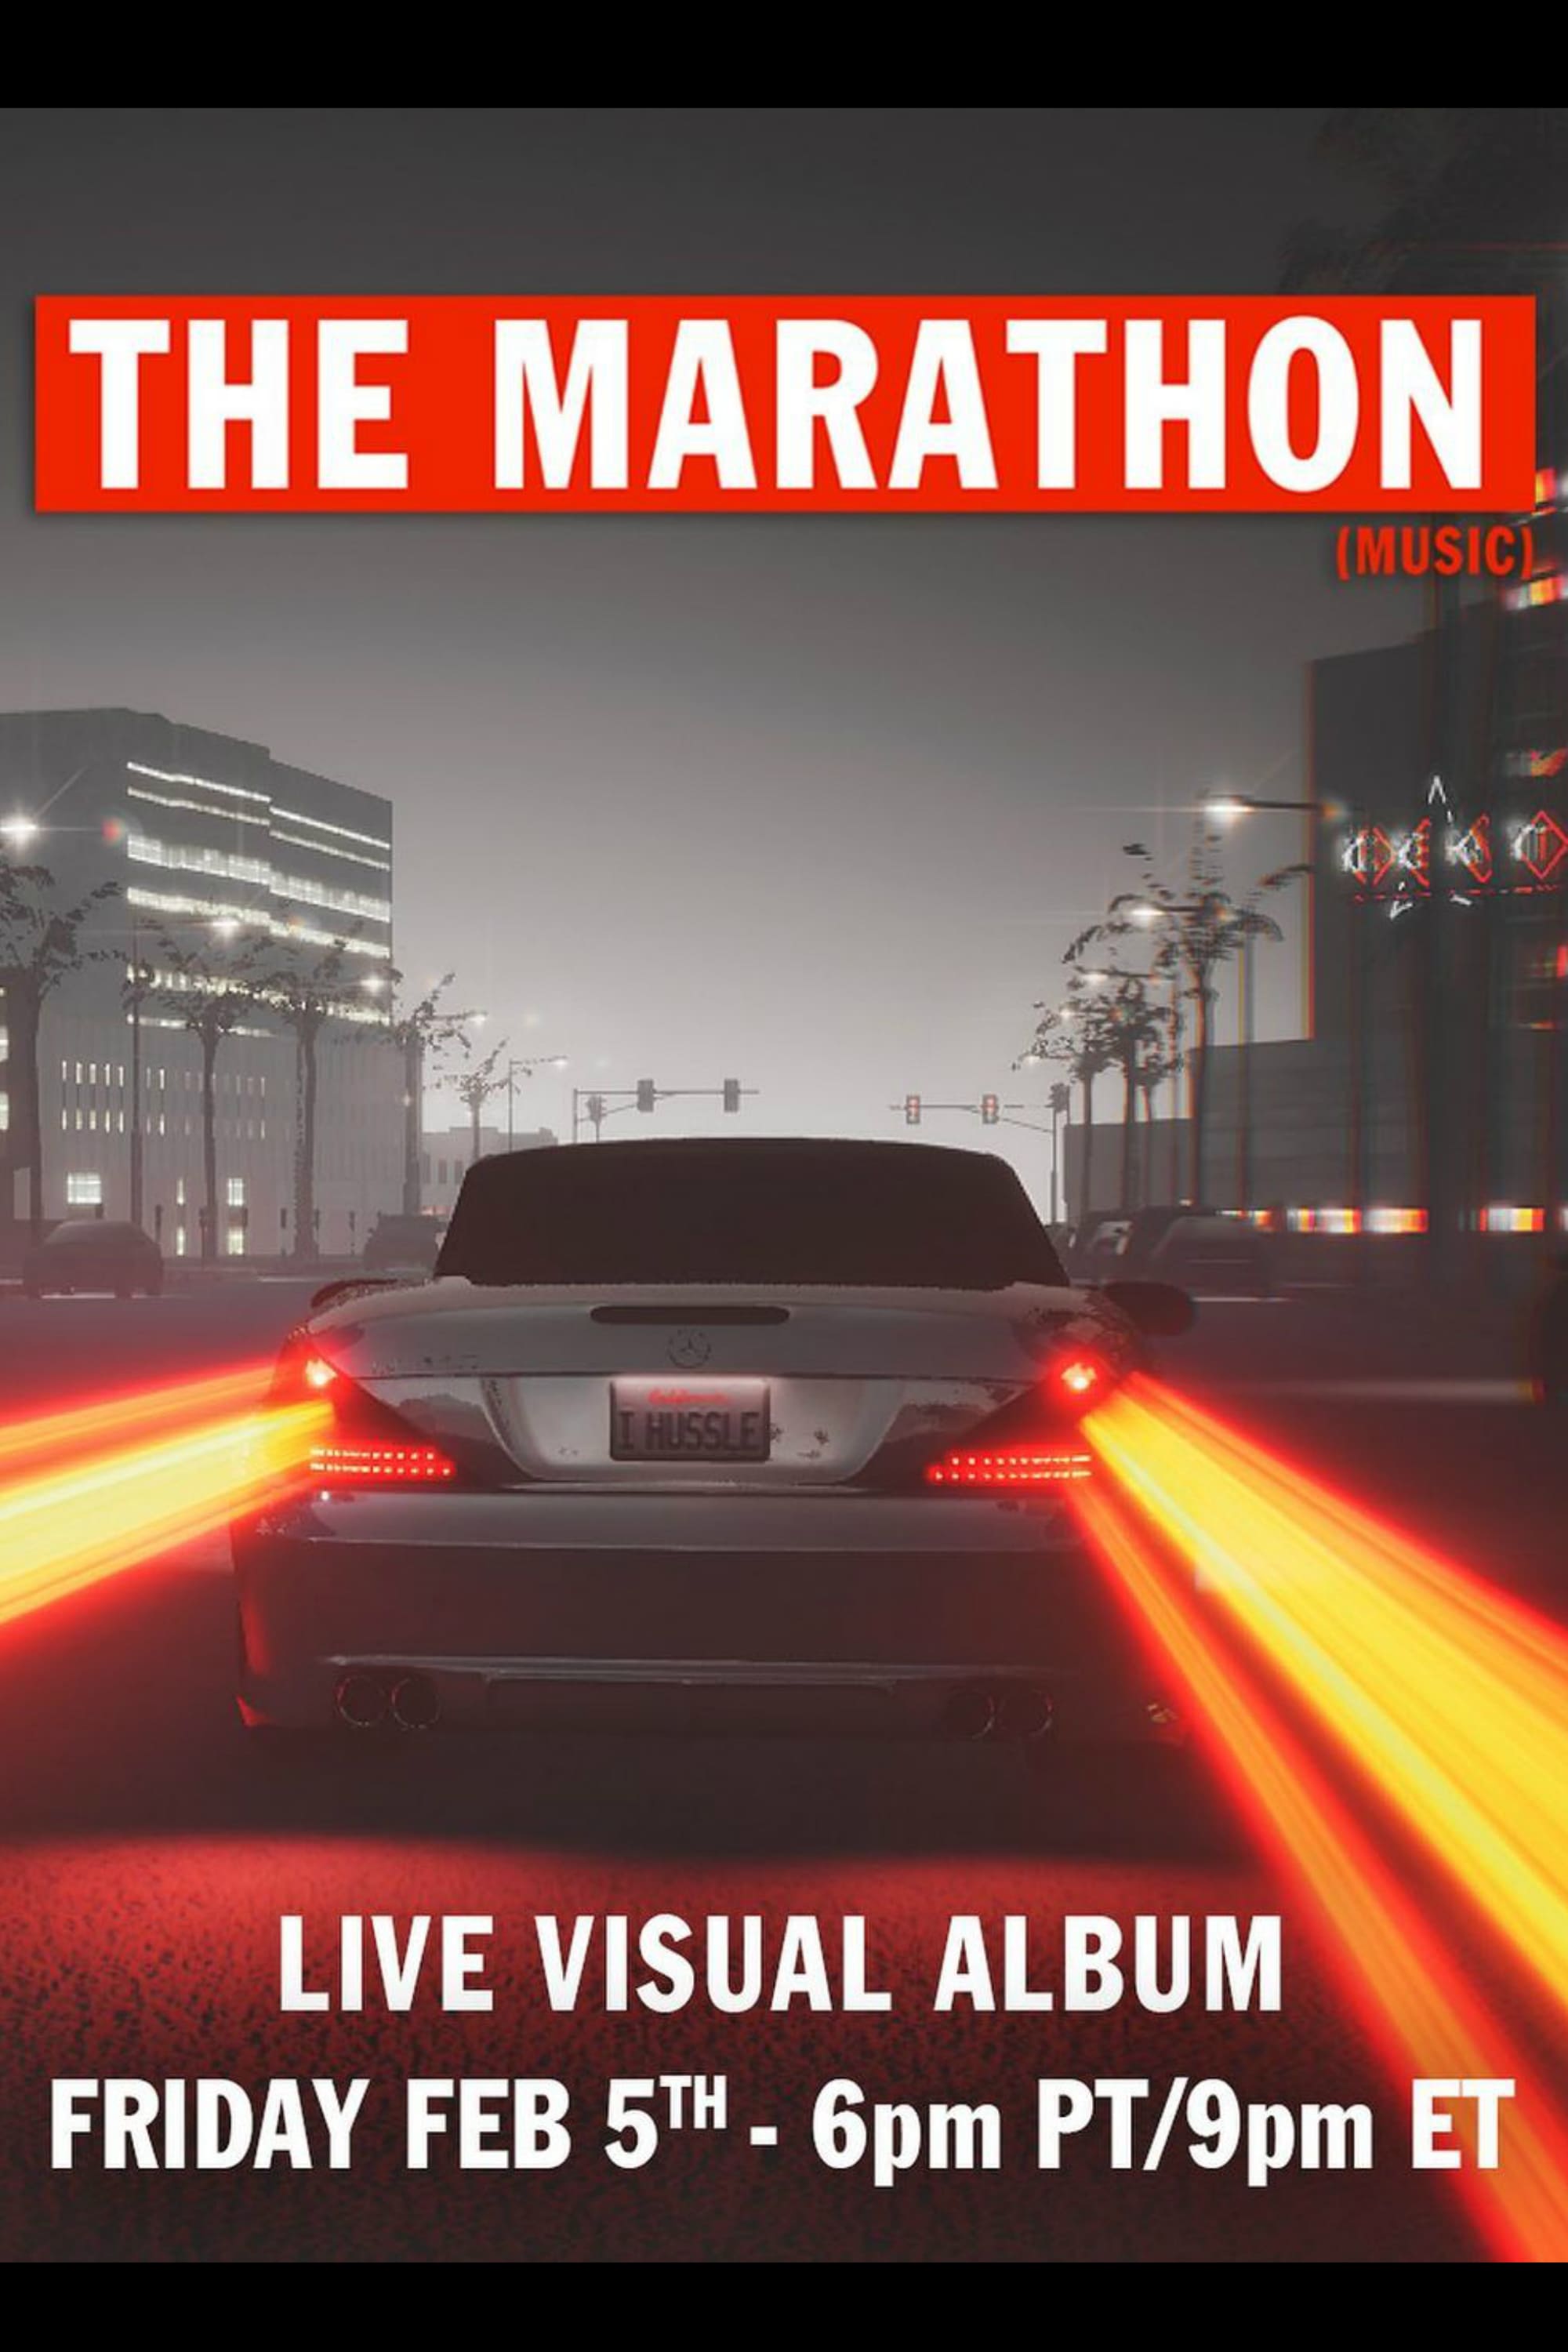 THE MARATHON: Live Visual Album